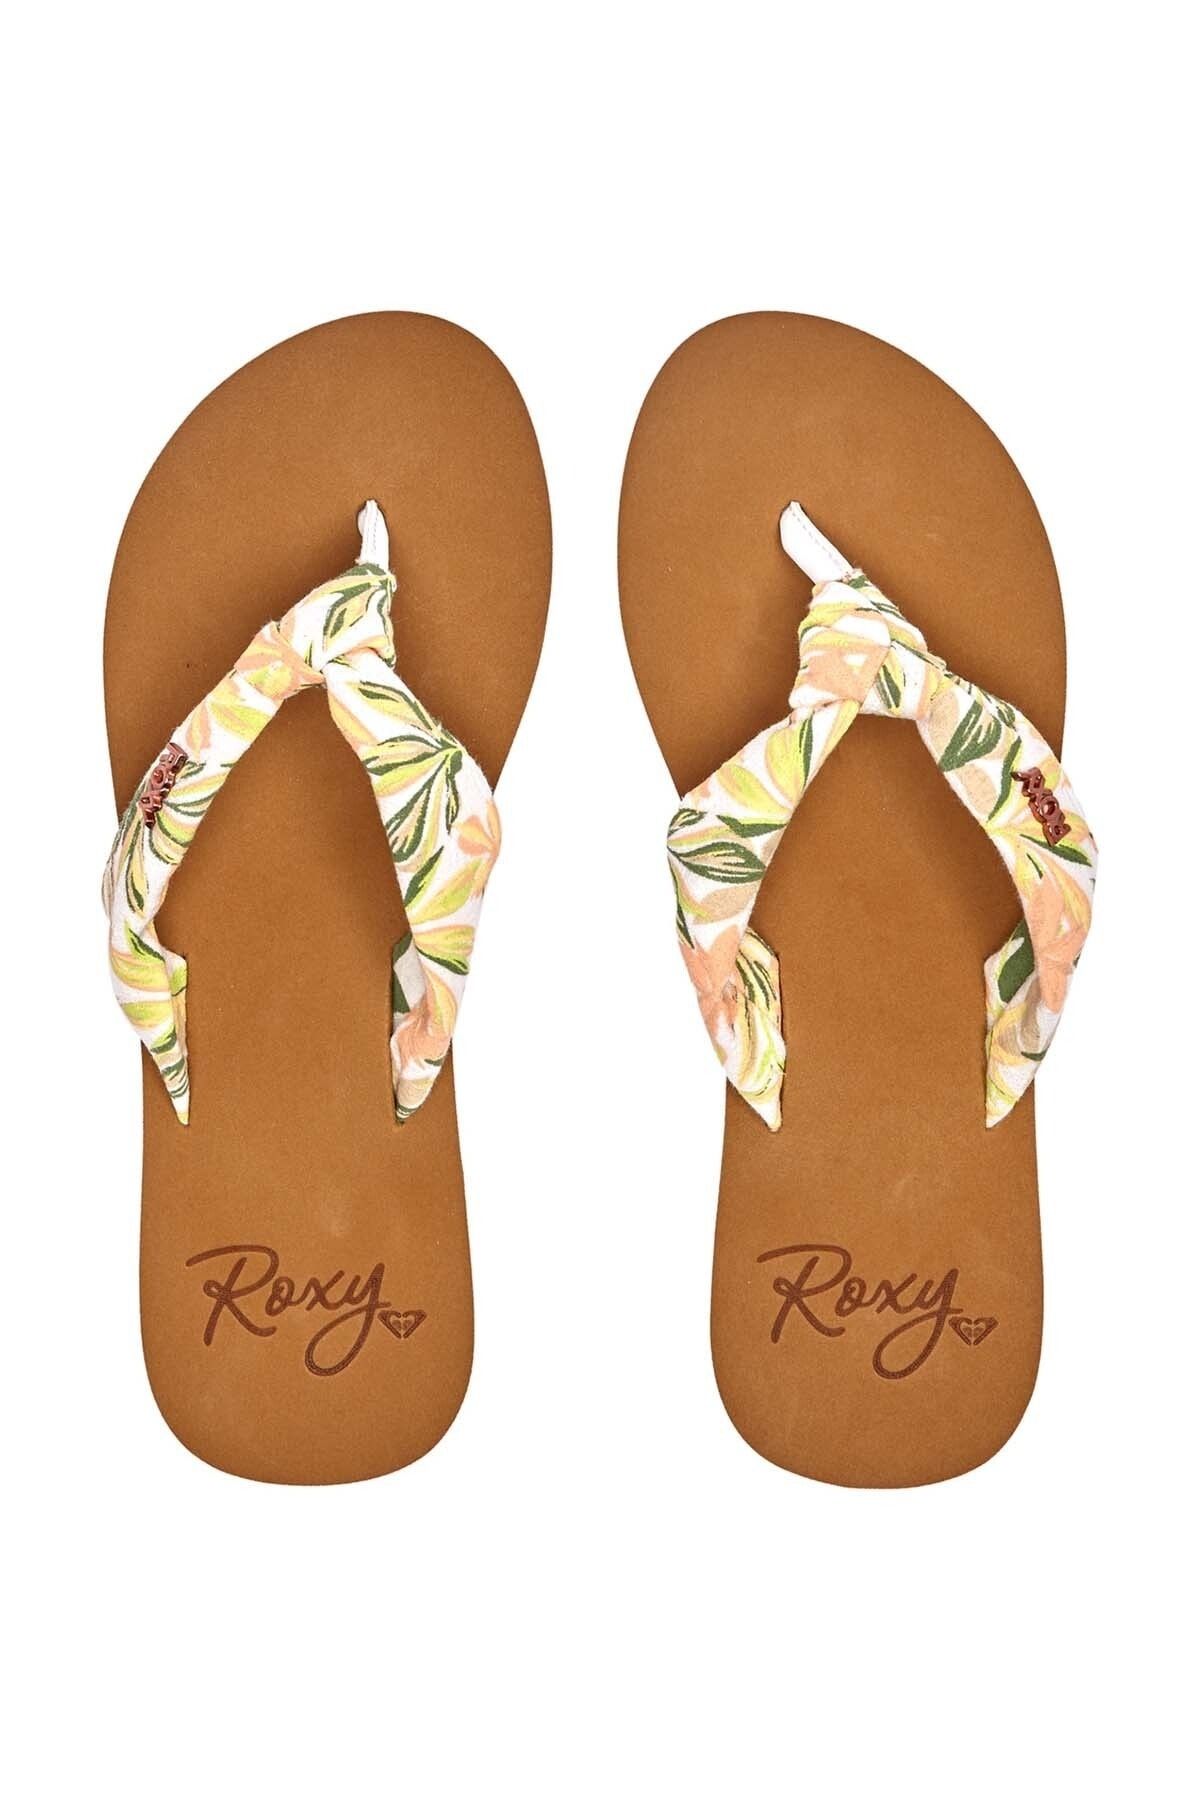 Roxy Sandals - White - Flat - Trendyol